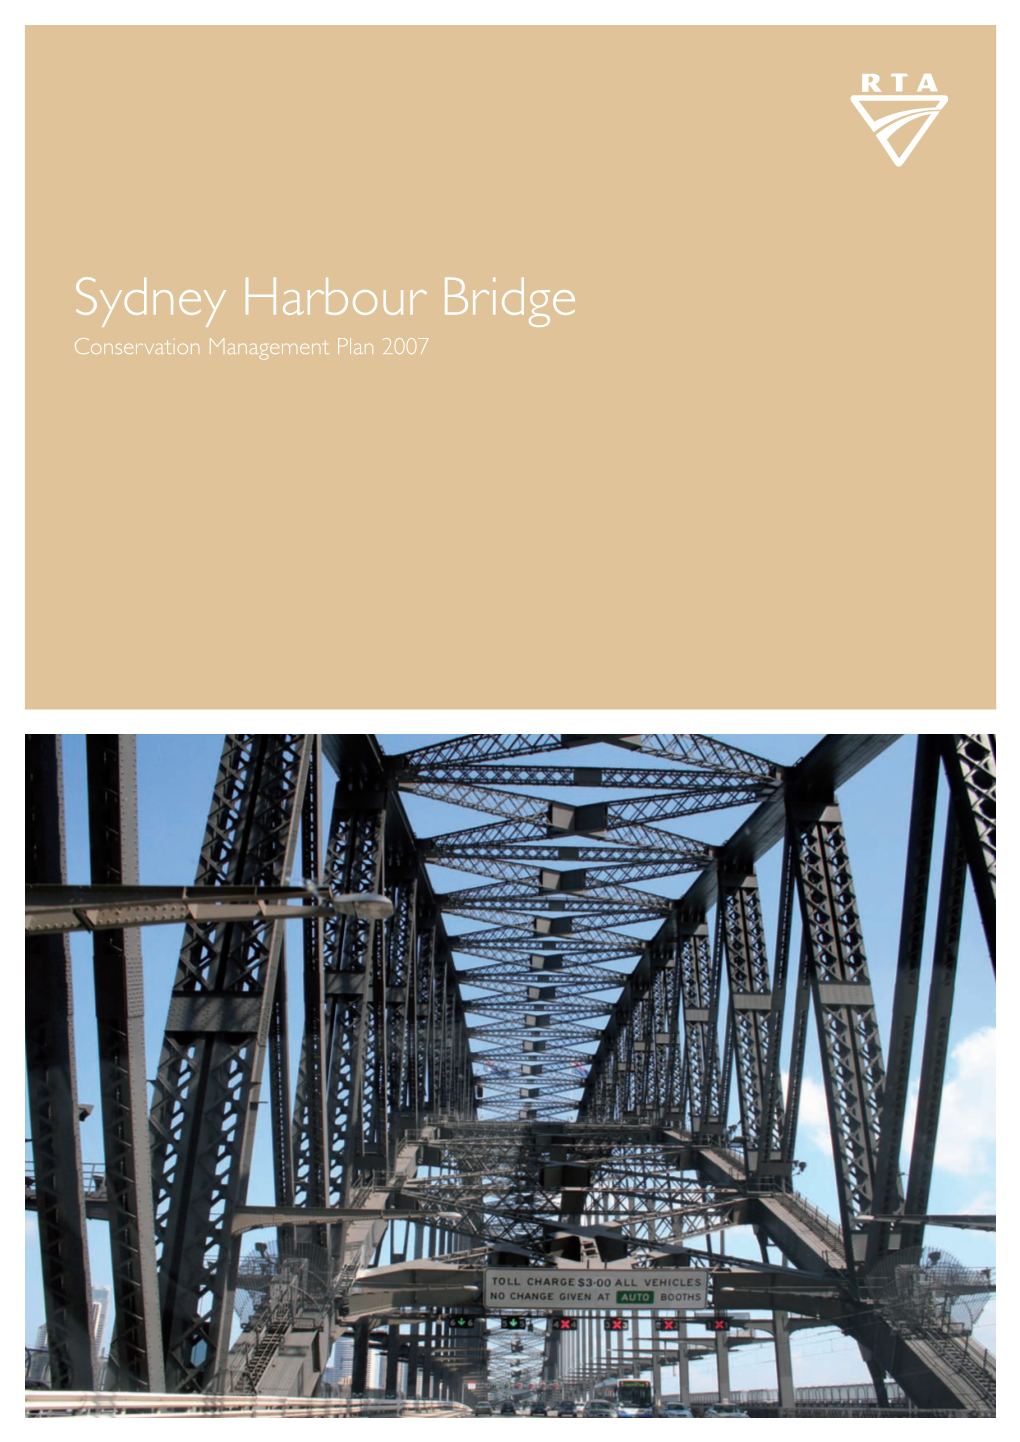 Sydney Harbour Bridge Conservation Management Plan 2007